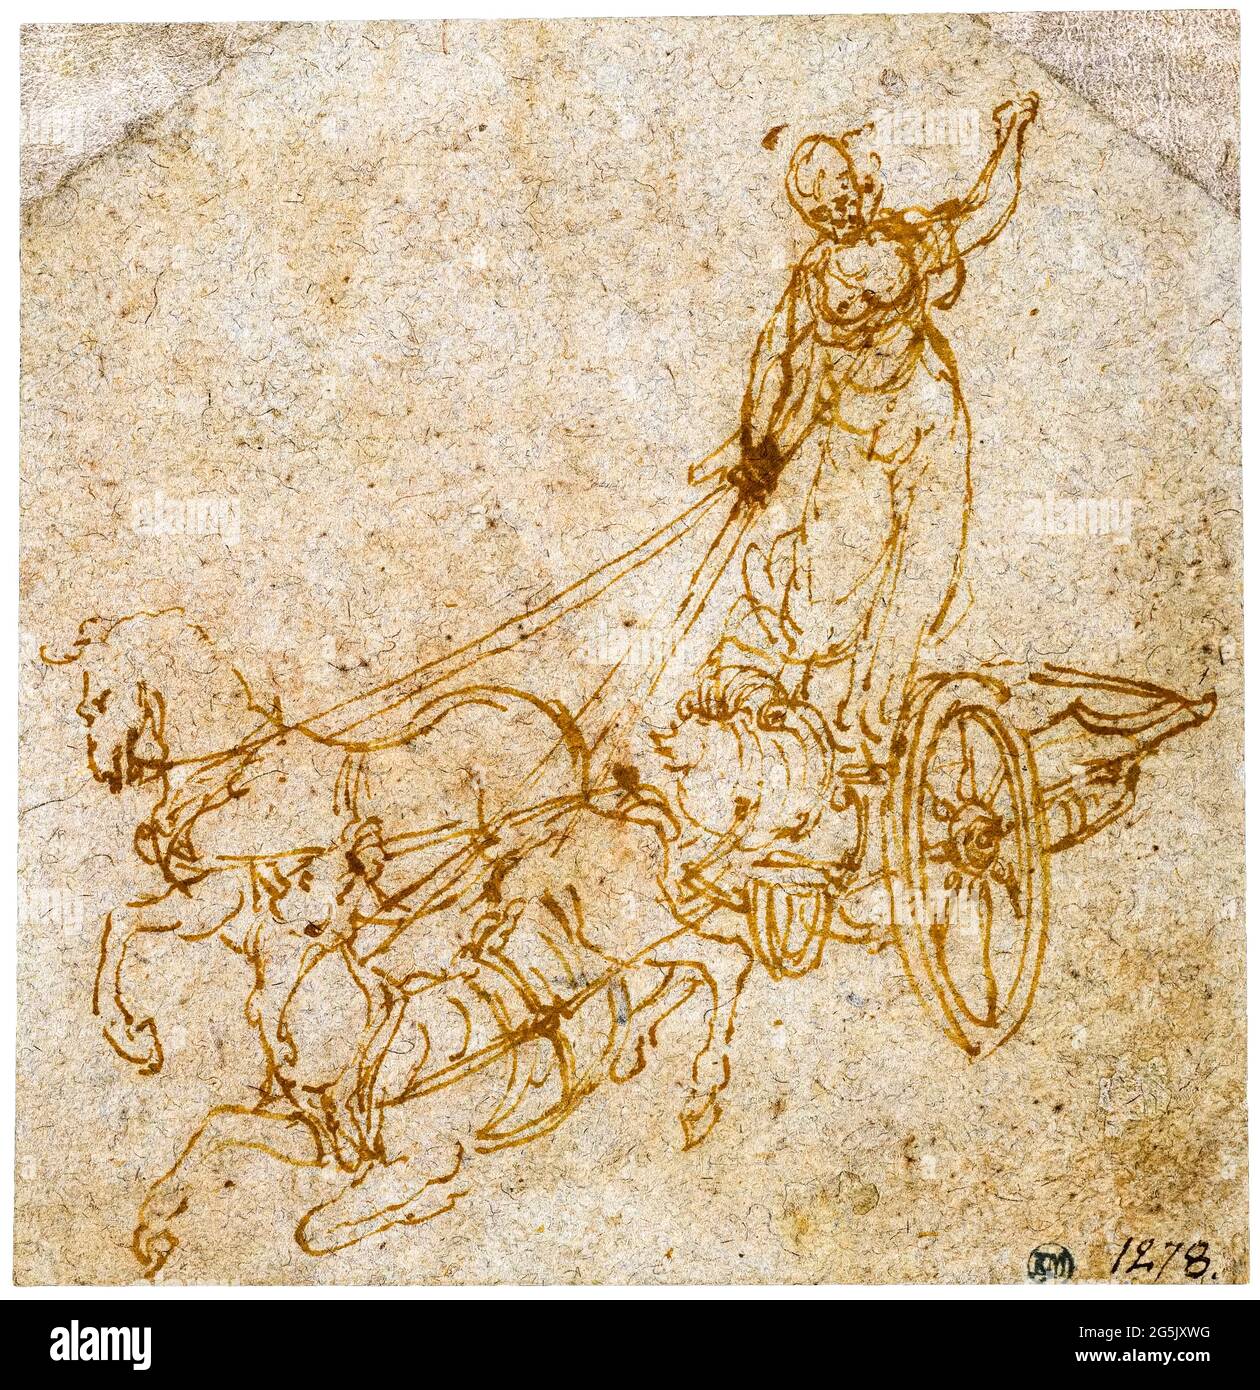 Croquis de Léonard de Vinci, Déesse debout dans un chariot dessiné par deux chevaux dont l'un tombe, dessinant avant 1519 Banque D'Images